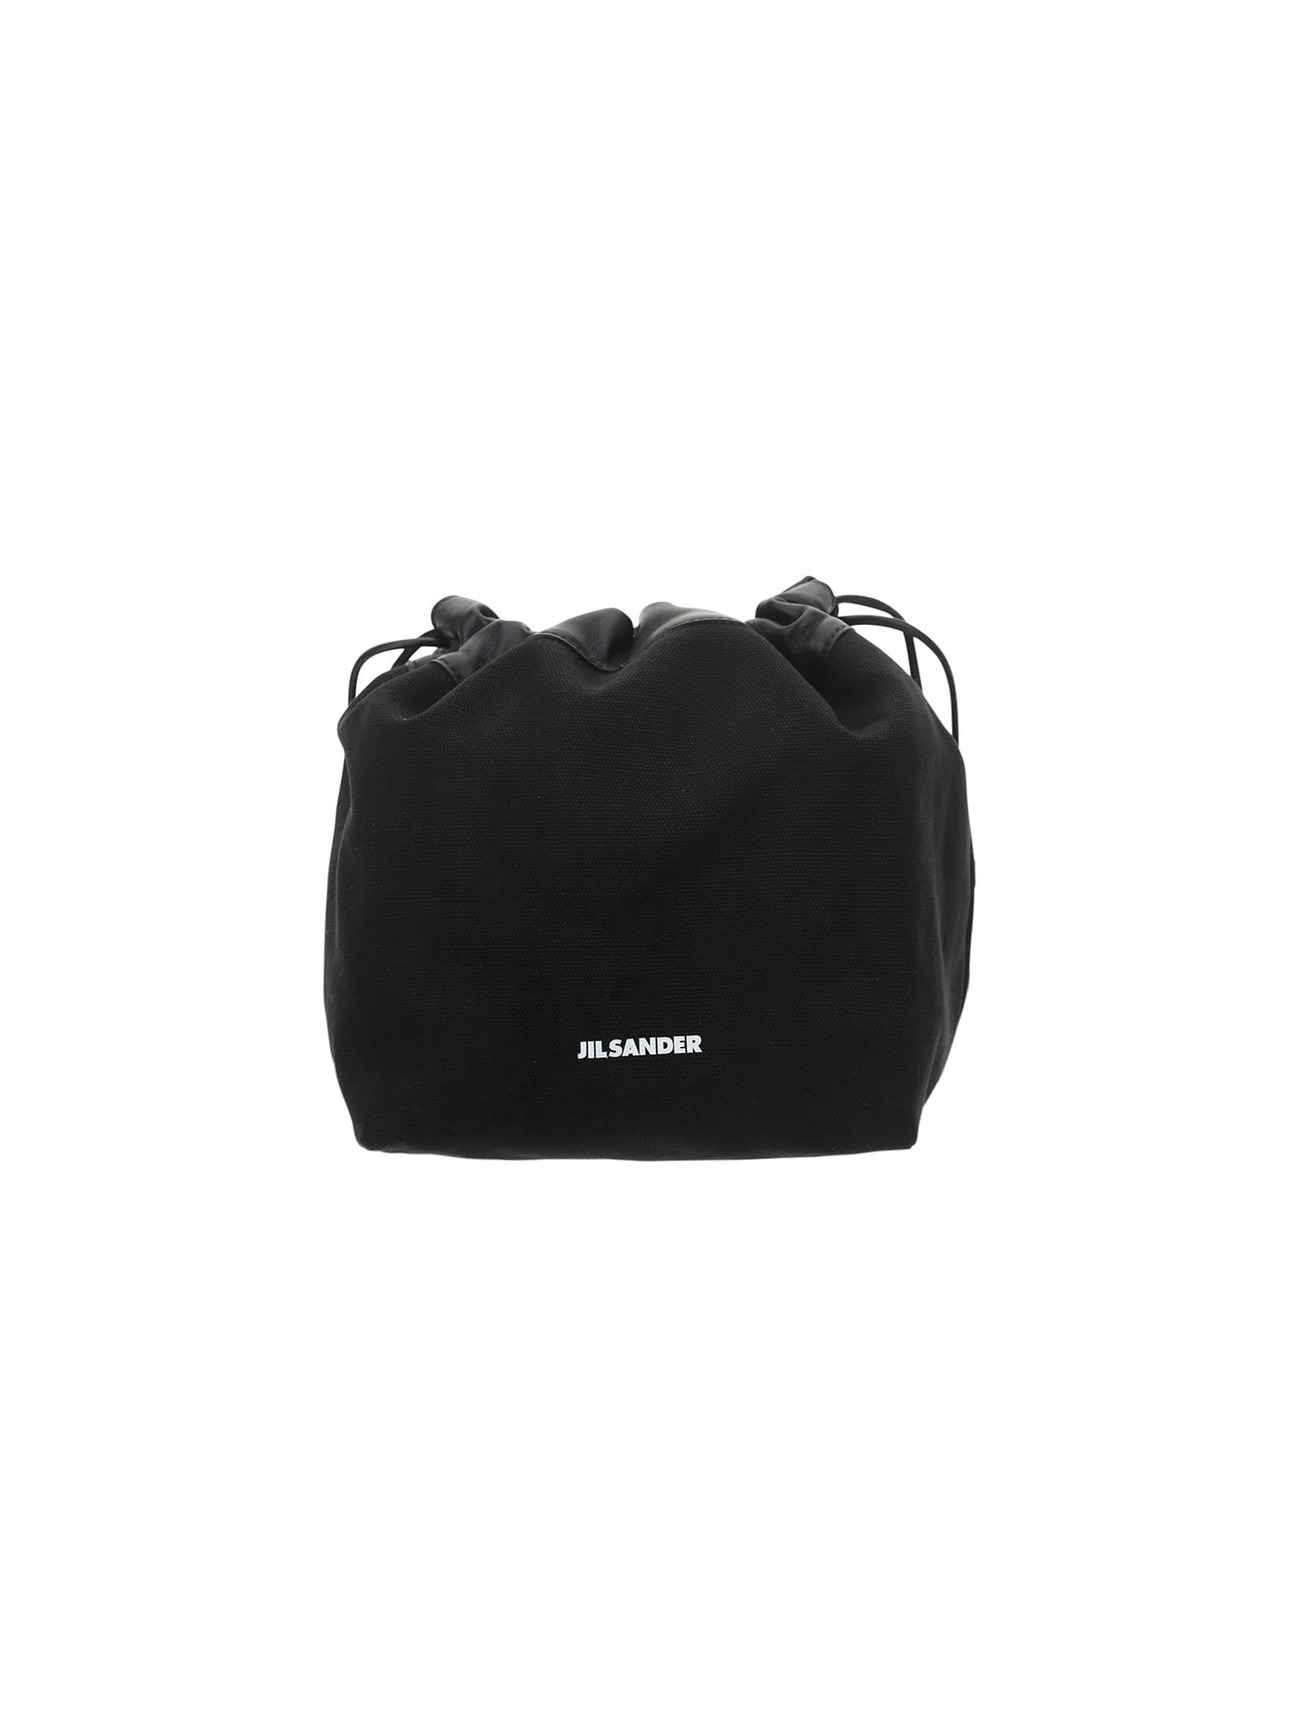 Jil Sander Shoulder Bag in black